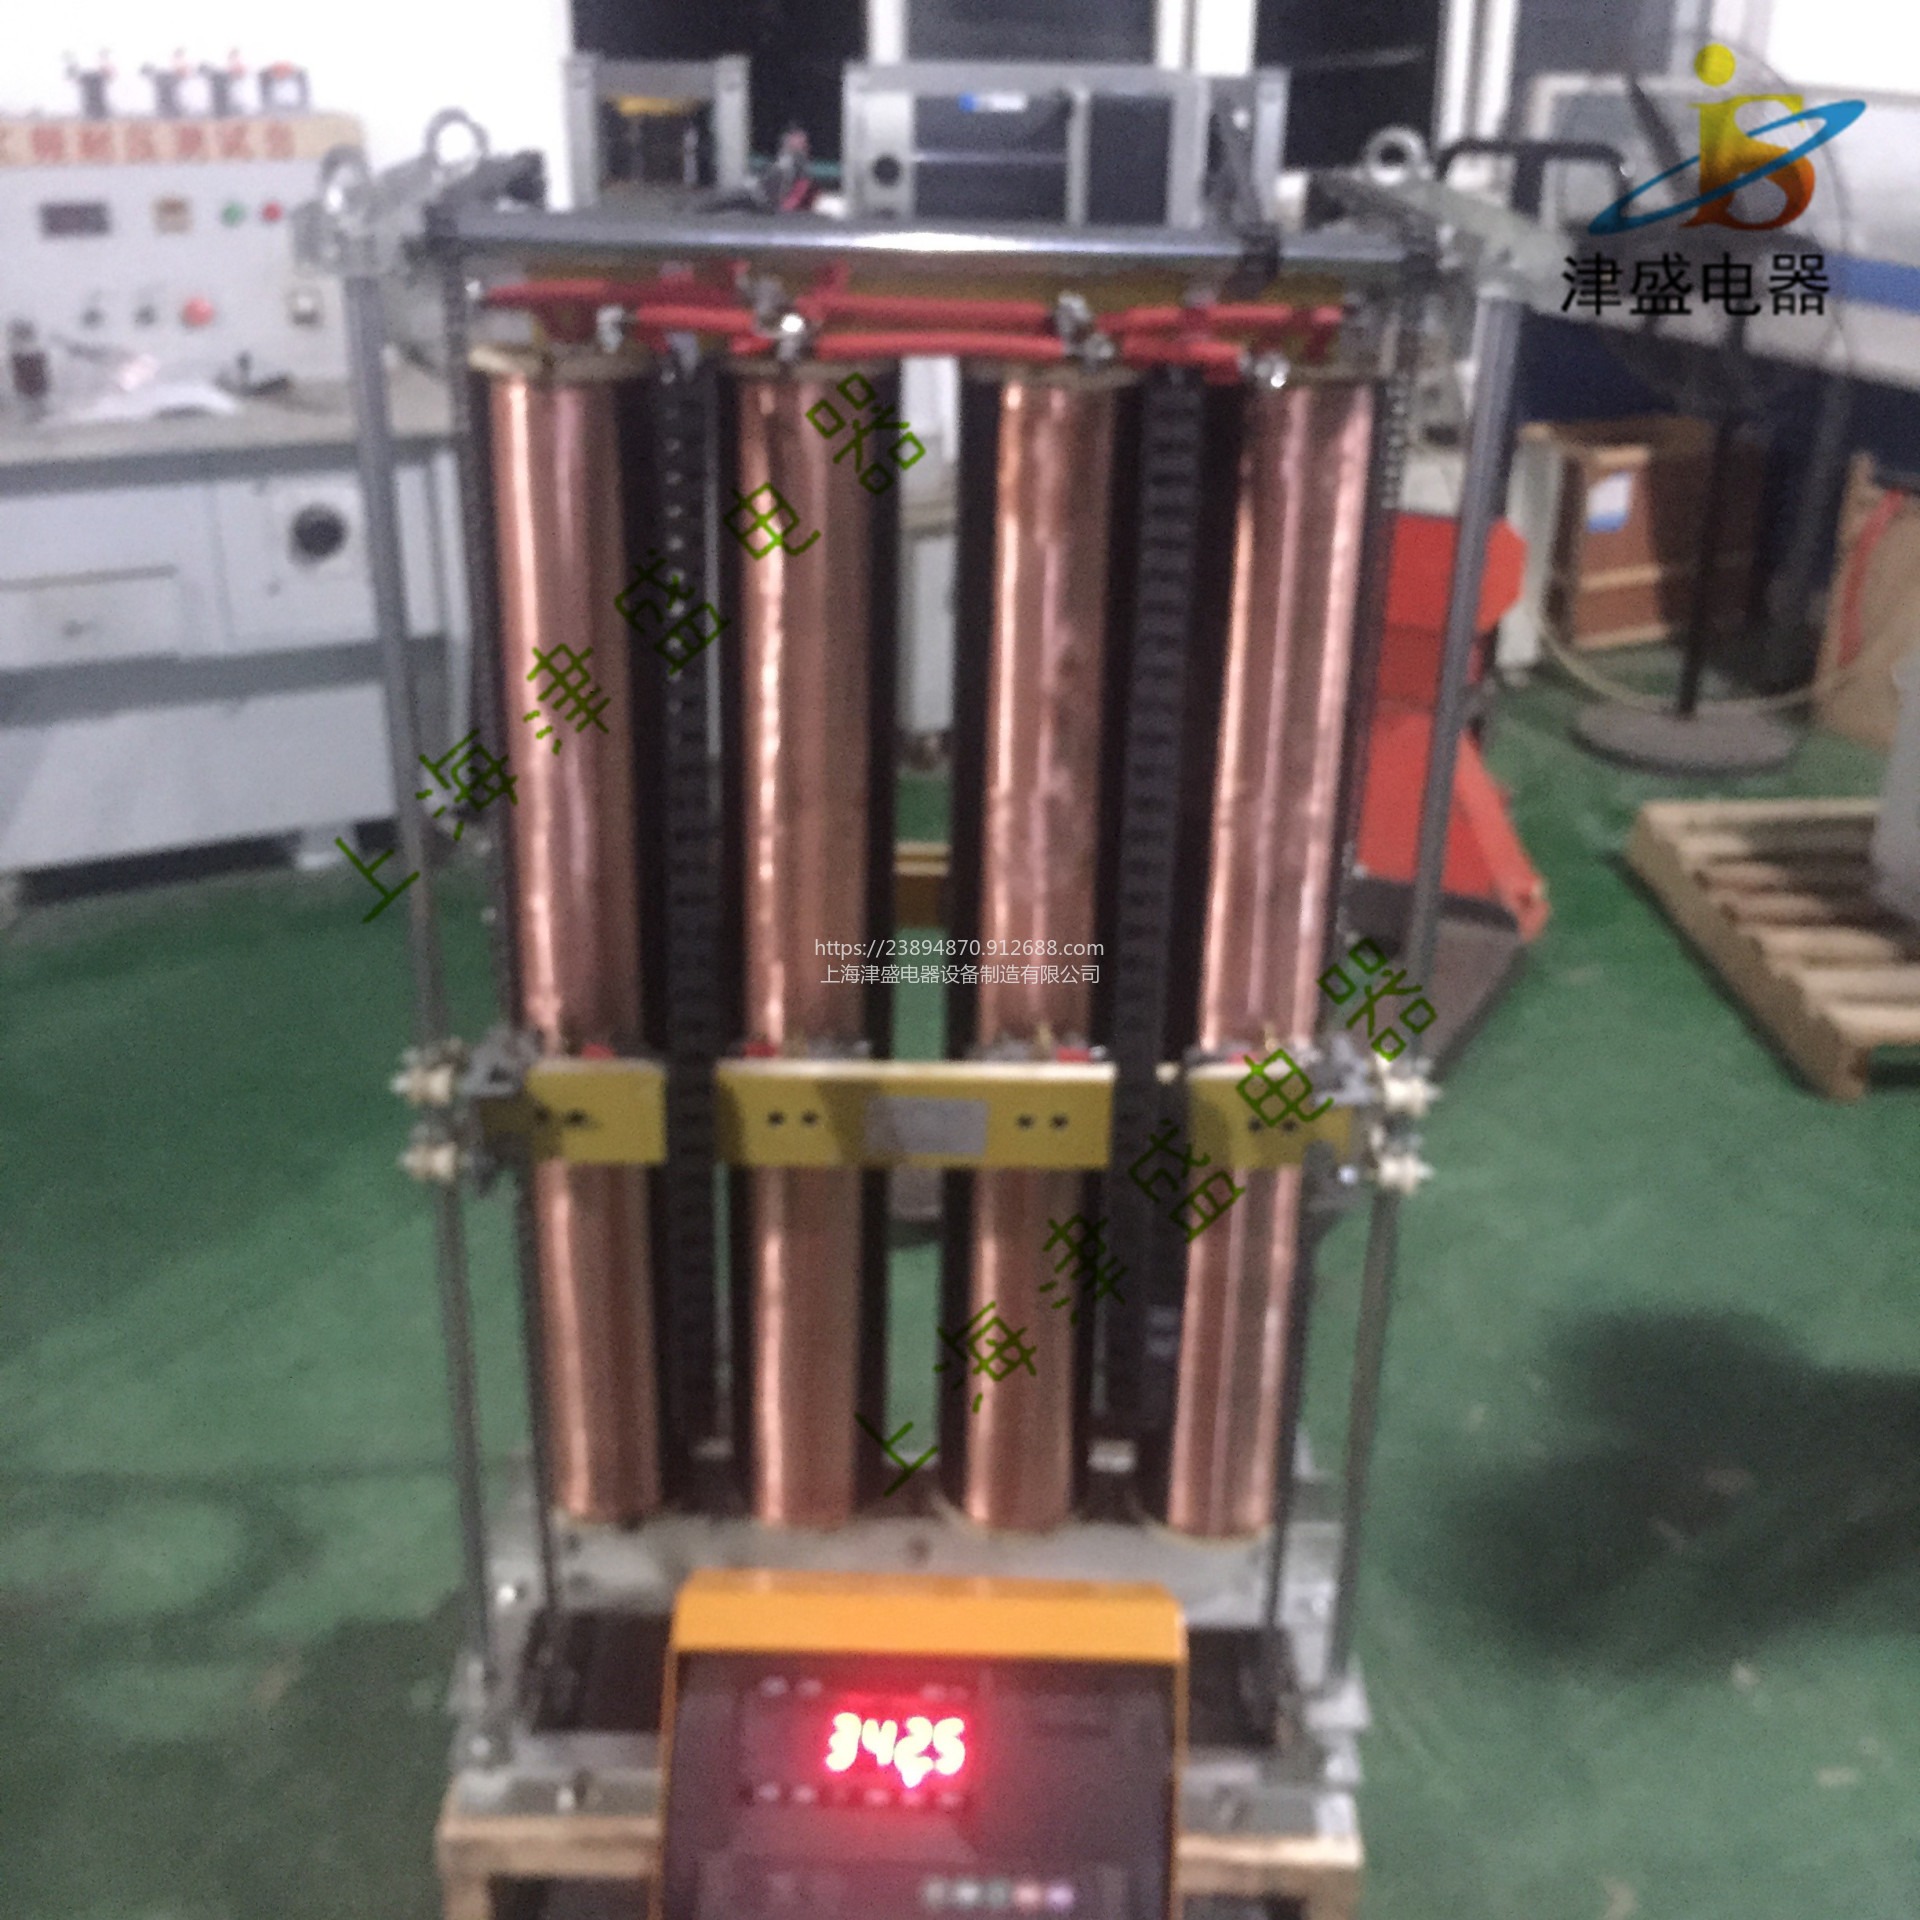 上海津盛调压器厂家直销 单相电力柱式大功率调压器 TDEGZ-60KVA220V/0-250V碳刷无极调压器图片